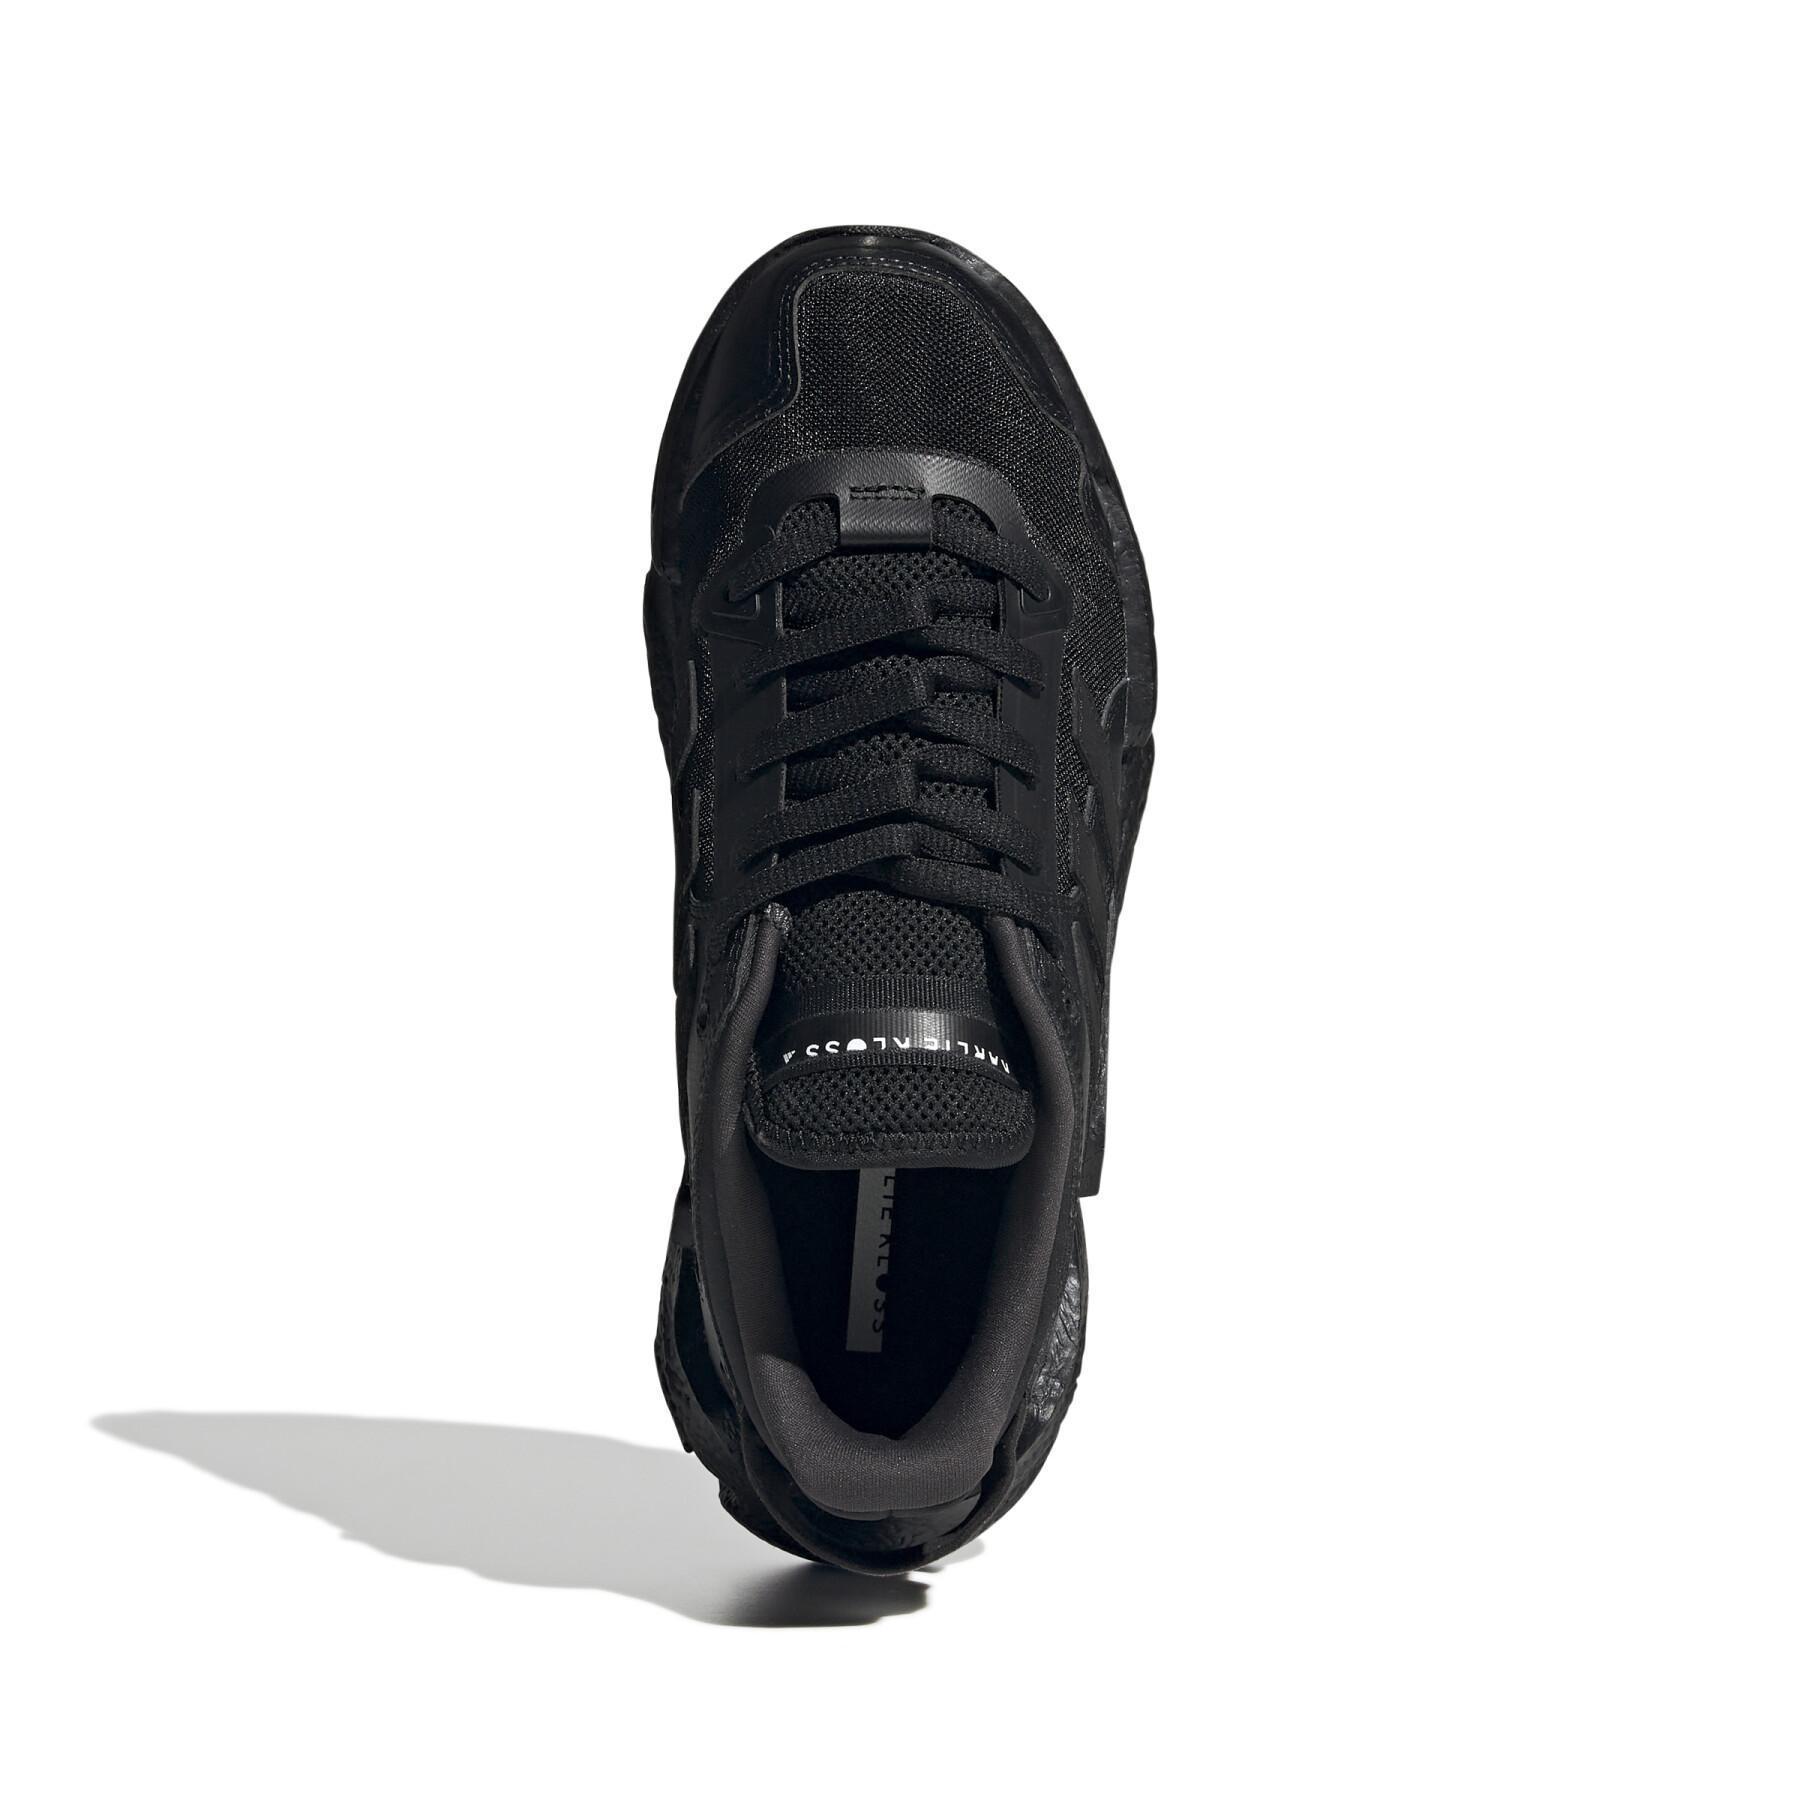 Buty do biegania dla kobiet adidas Karlie Kloss X9000